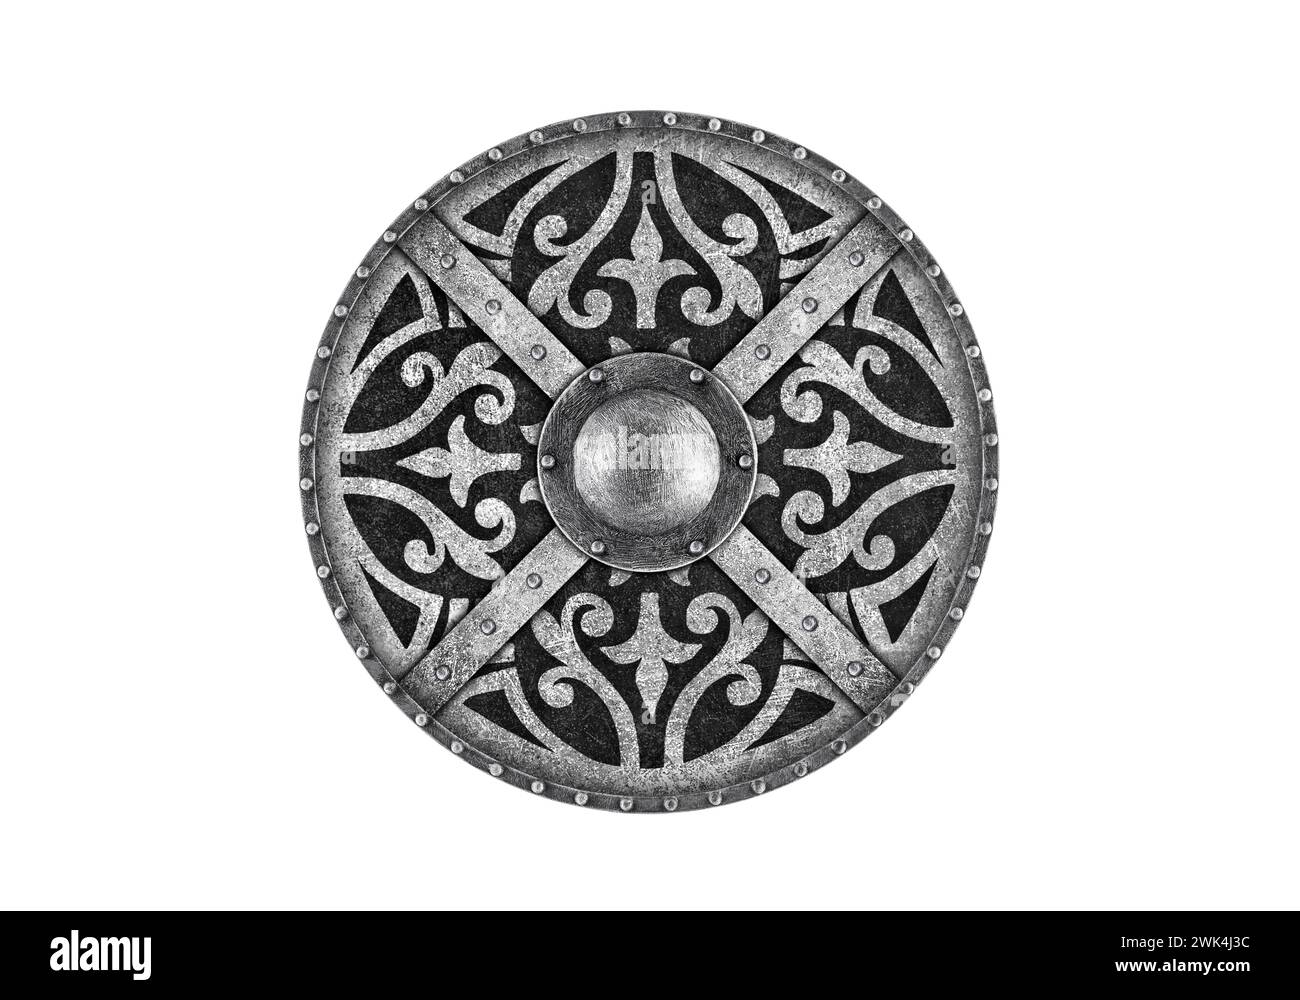 Ancien bouclier rond en métal décoré isolé sur fond blanc Banque D'Images